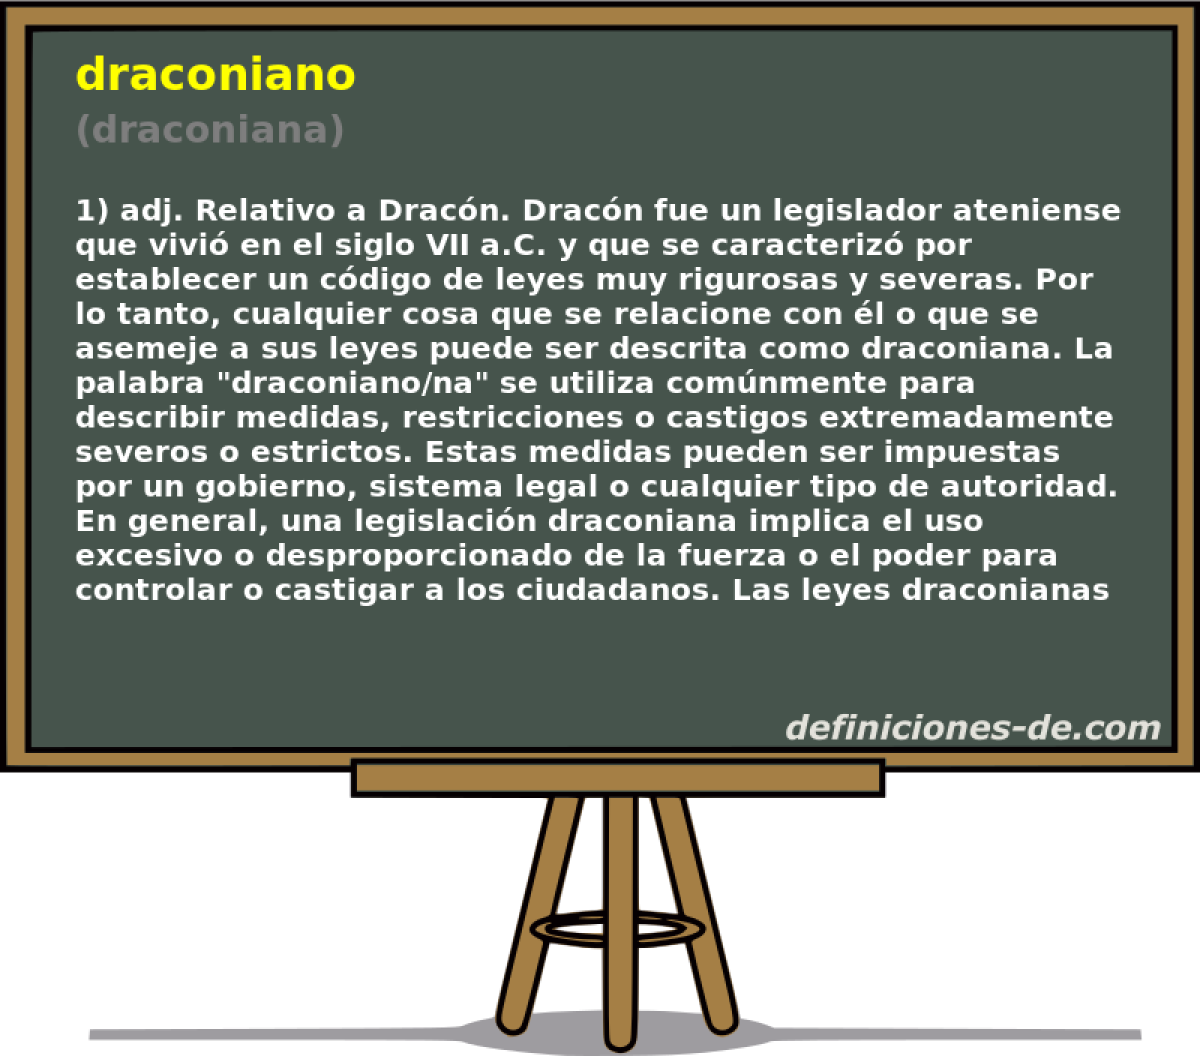 draconiano (draconiana)